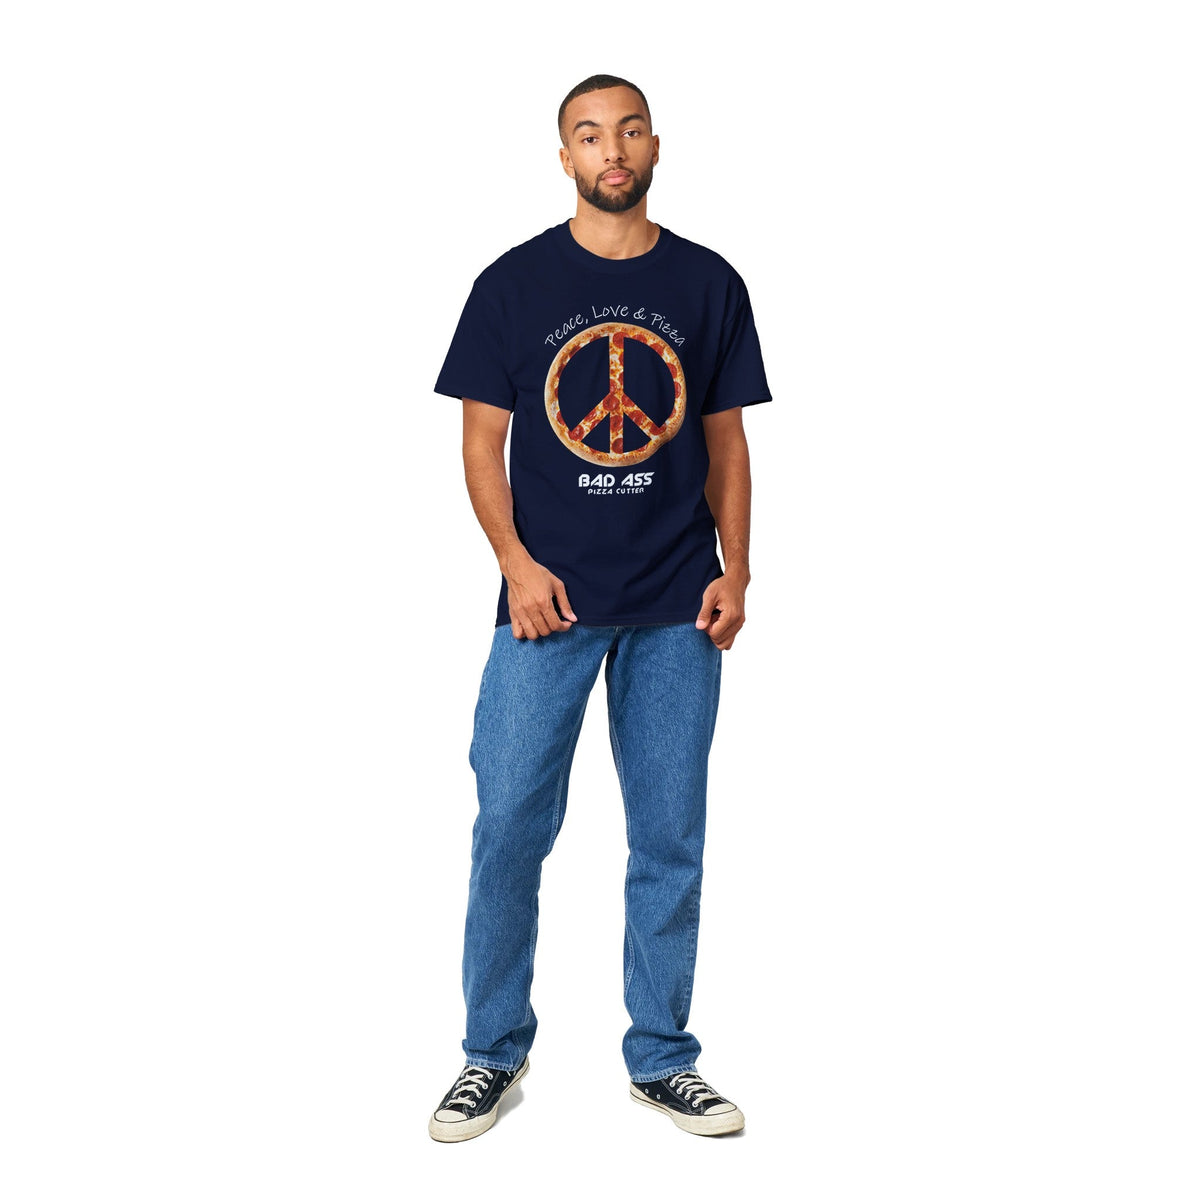 Peace, Love & Pizza Crewneck T-shirt - BAD ASS Pizza Cutter